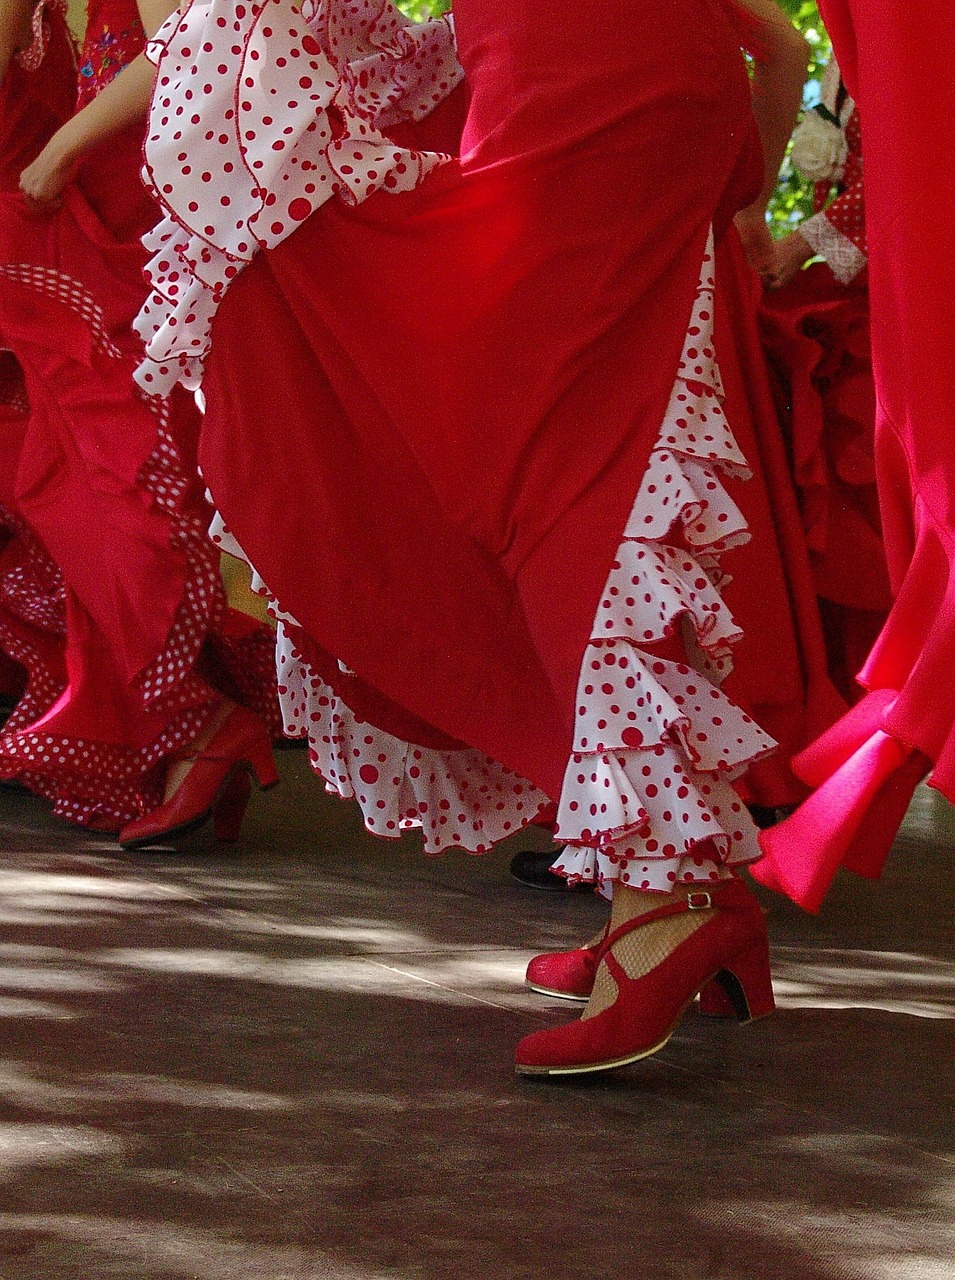 red skirts spanish free photo